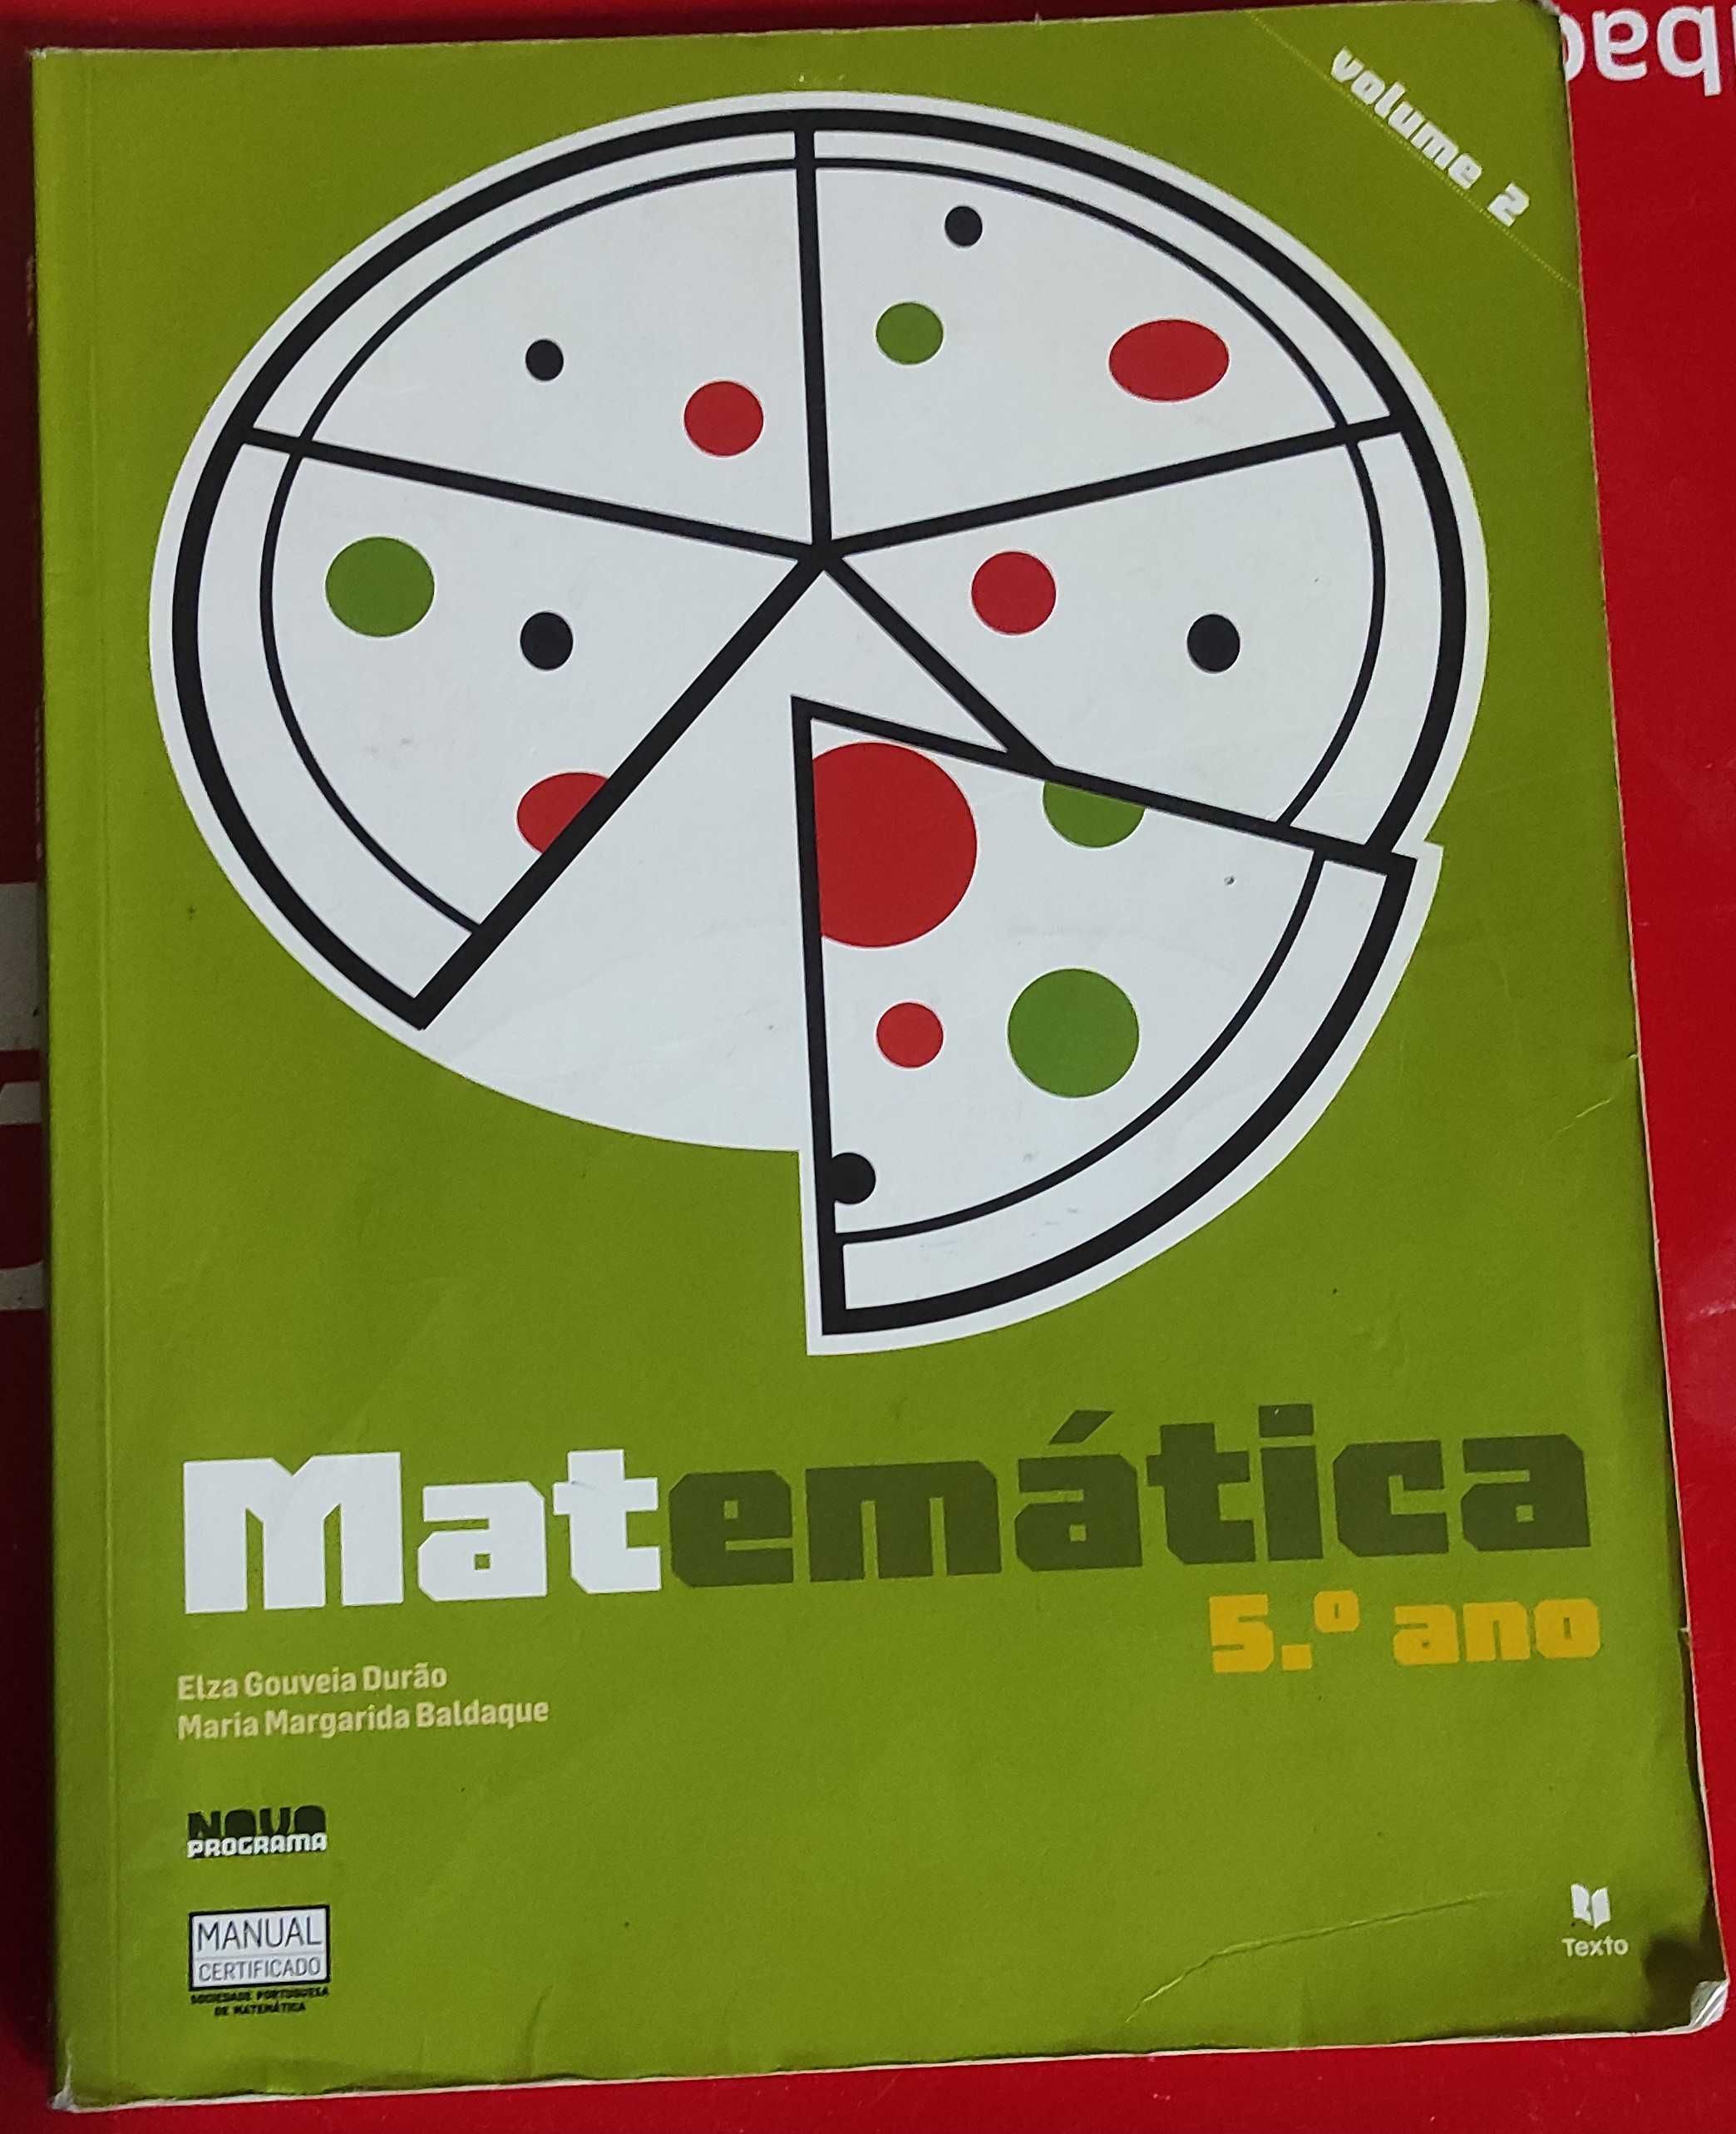 Caderno de apoio ao aluno - Matemática